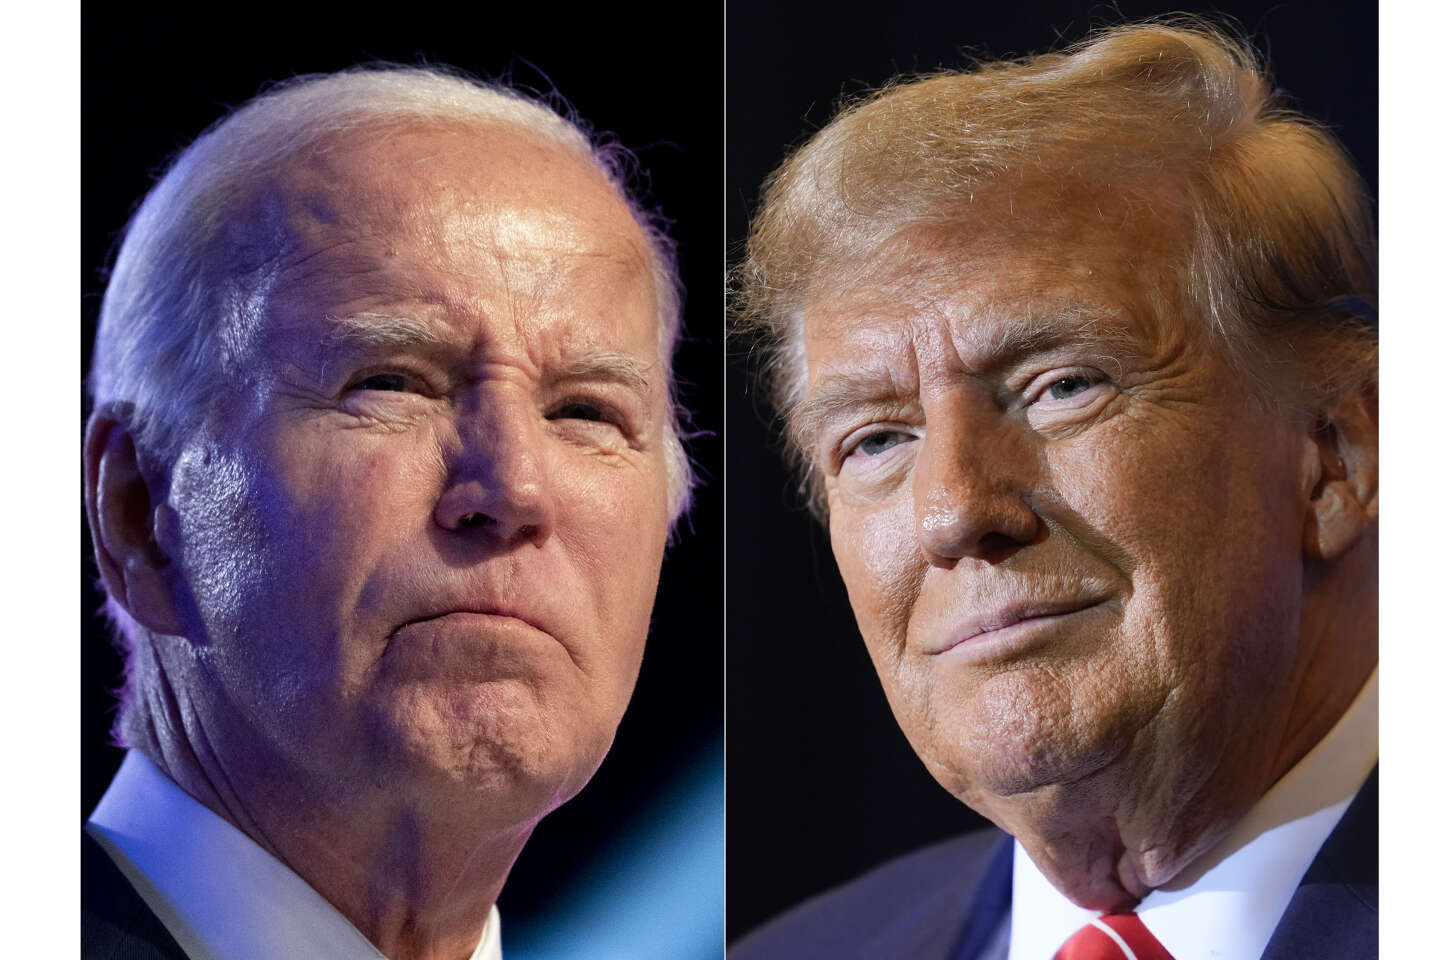 Joe Biden and Donald Trump won their parties' nominations